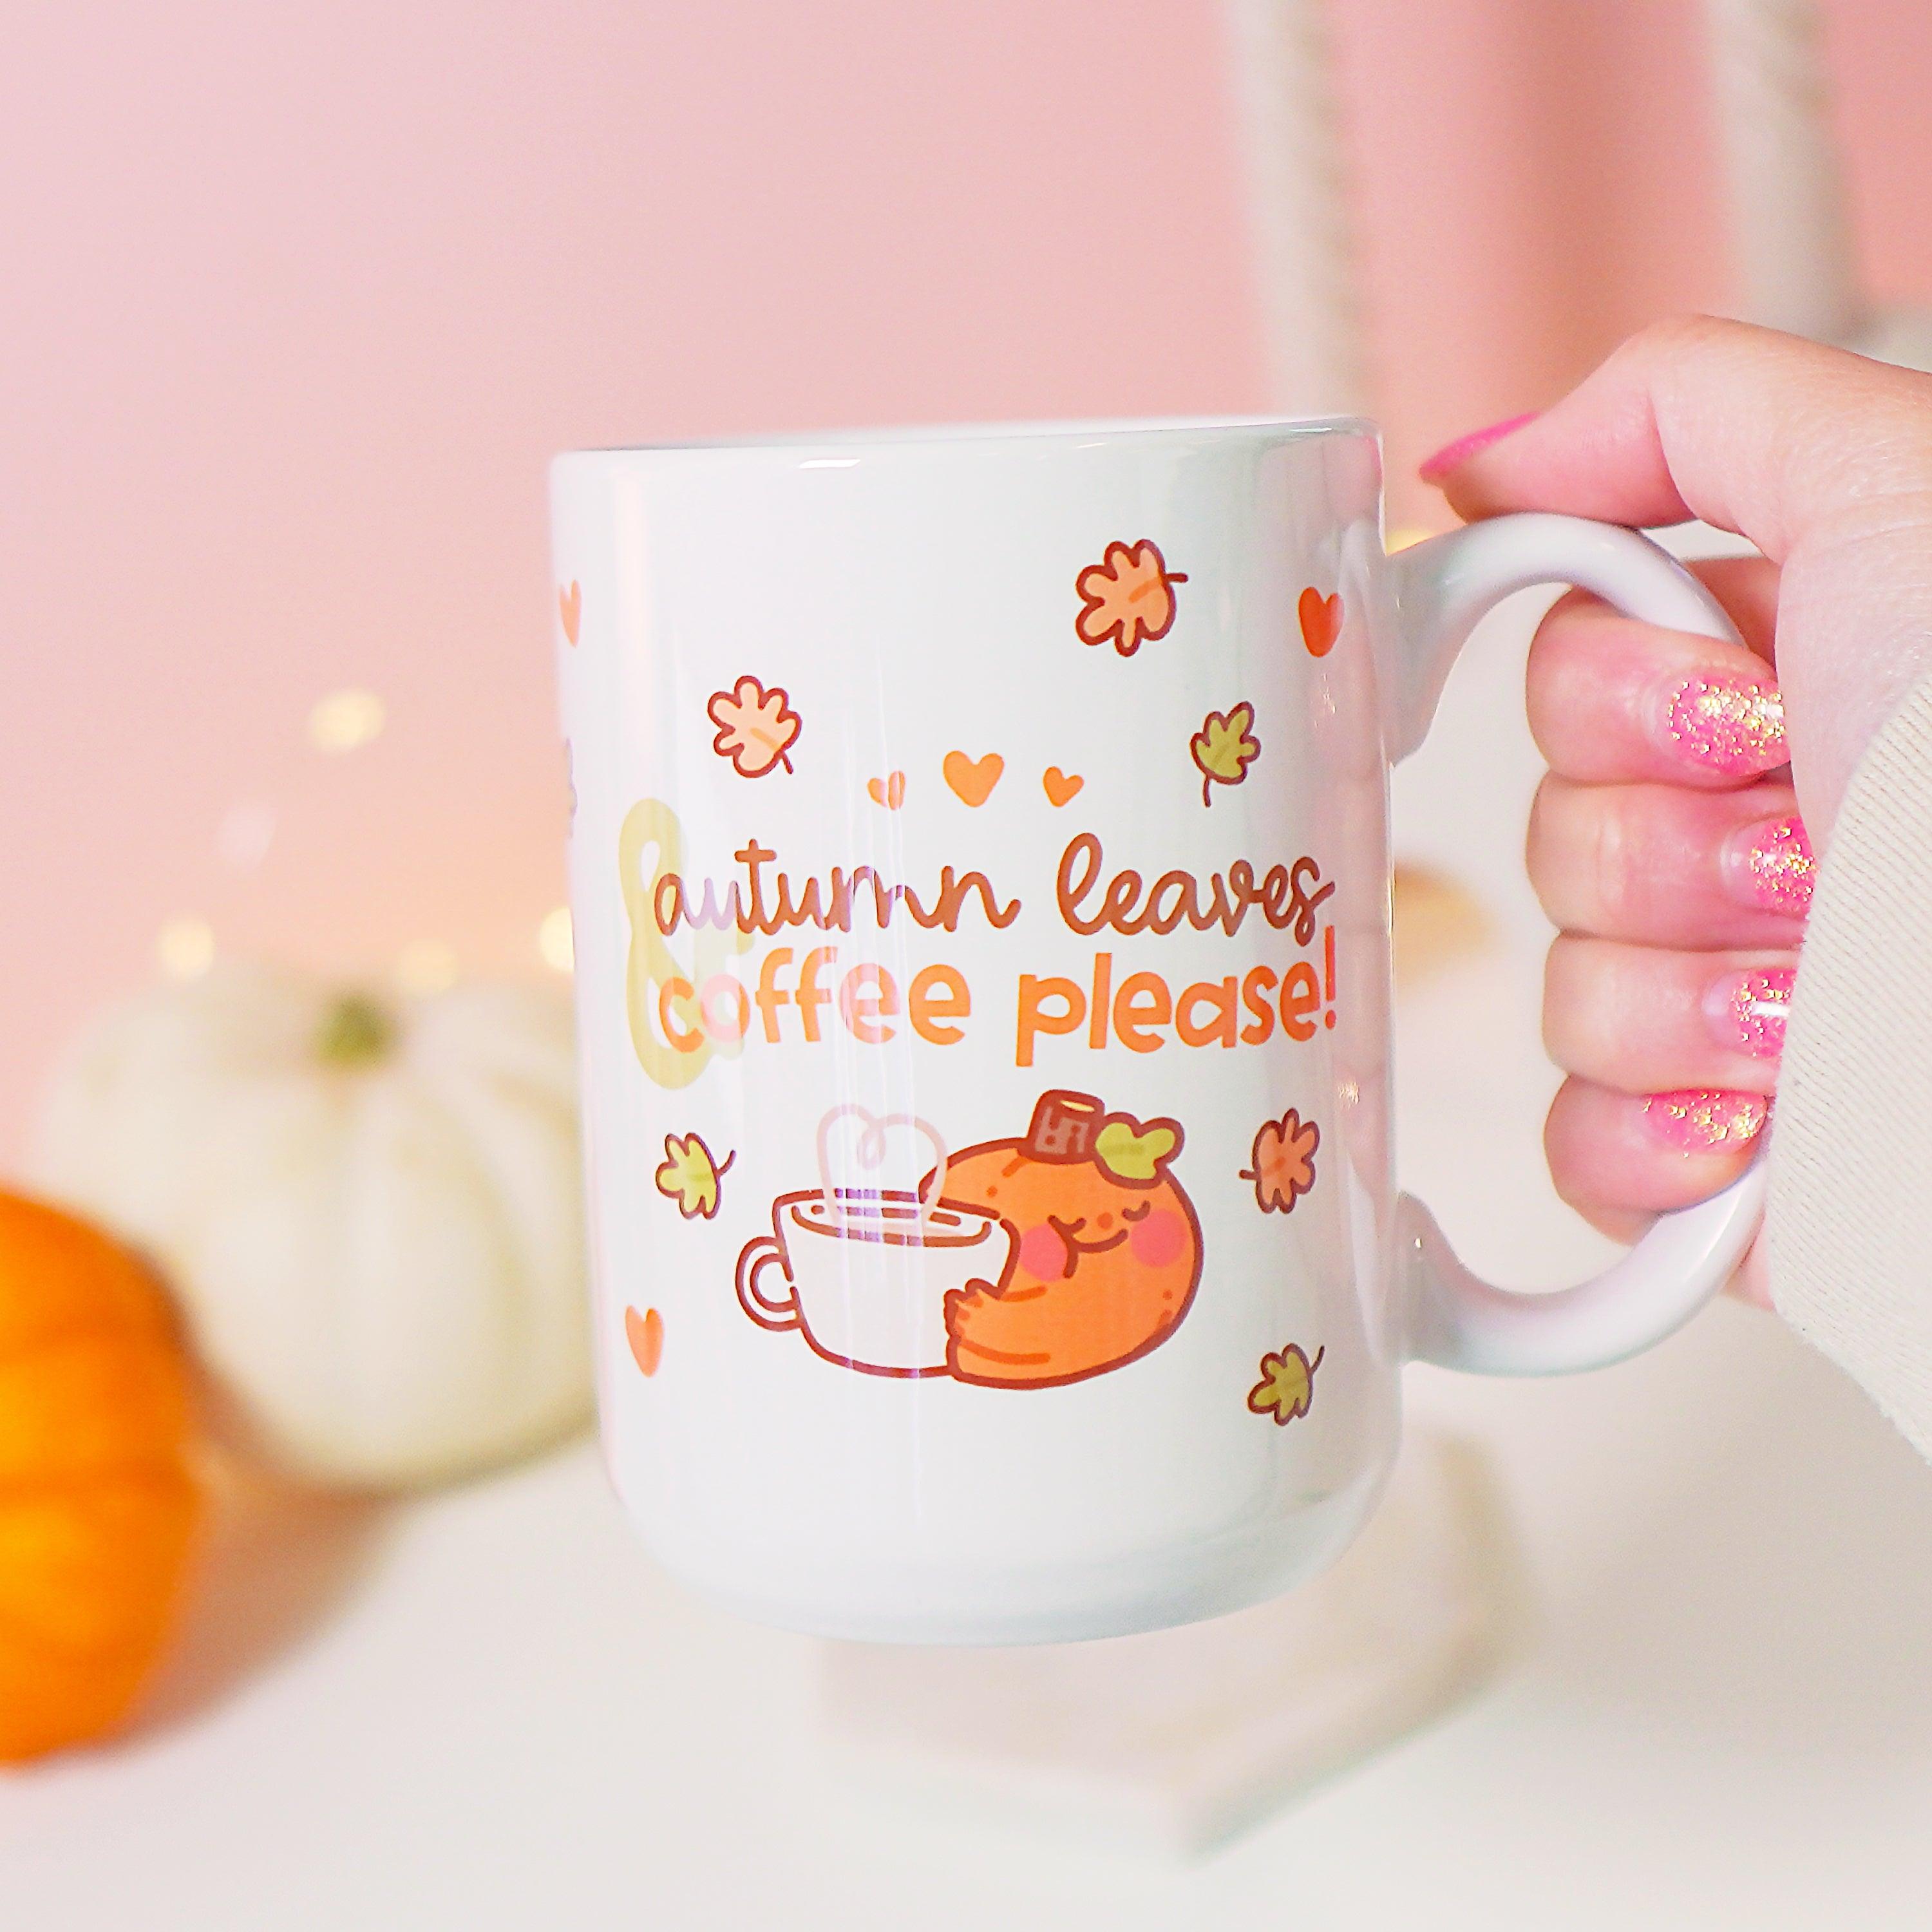 Autumn Leaves & Coffee Please! Mug - Handprinted Ceramic Mug with Original Katnipp Illustration, main